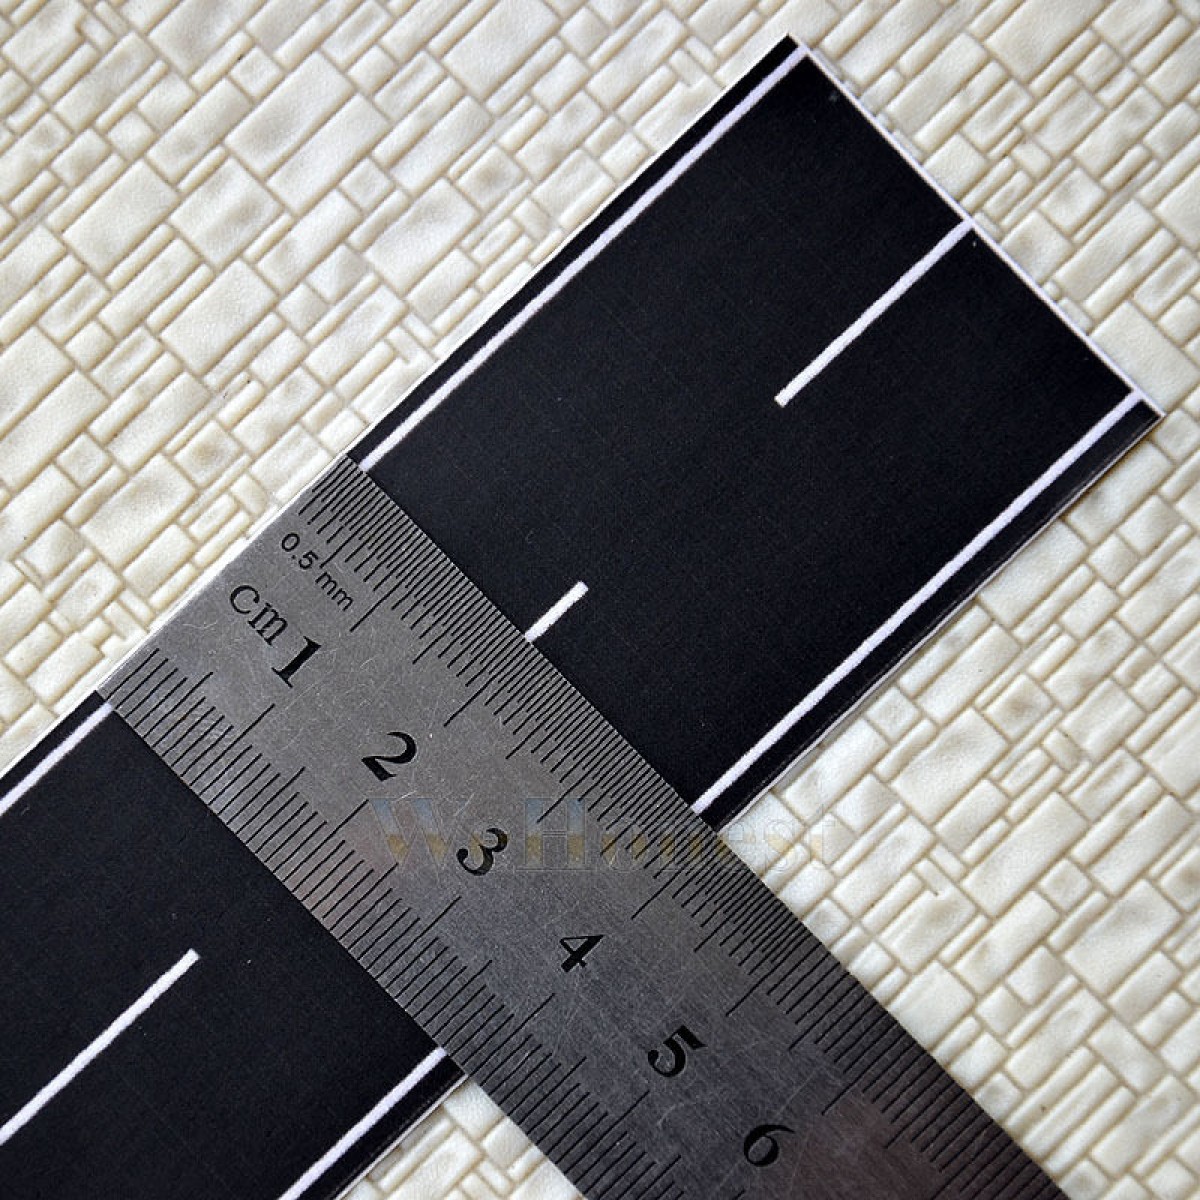 1 x  N scale 1:160 BLACK TAR MACK ROAD STRIPs 40mm x 500mm Self Stick